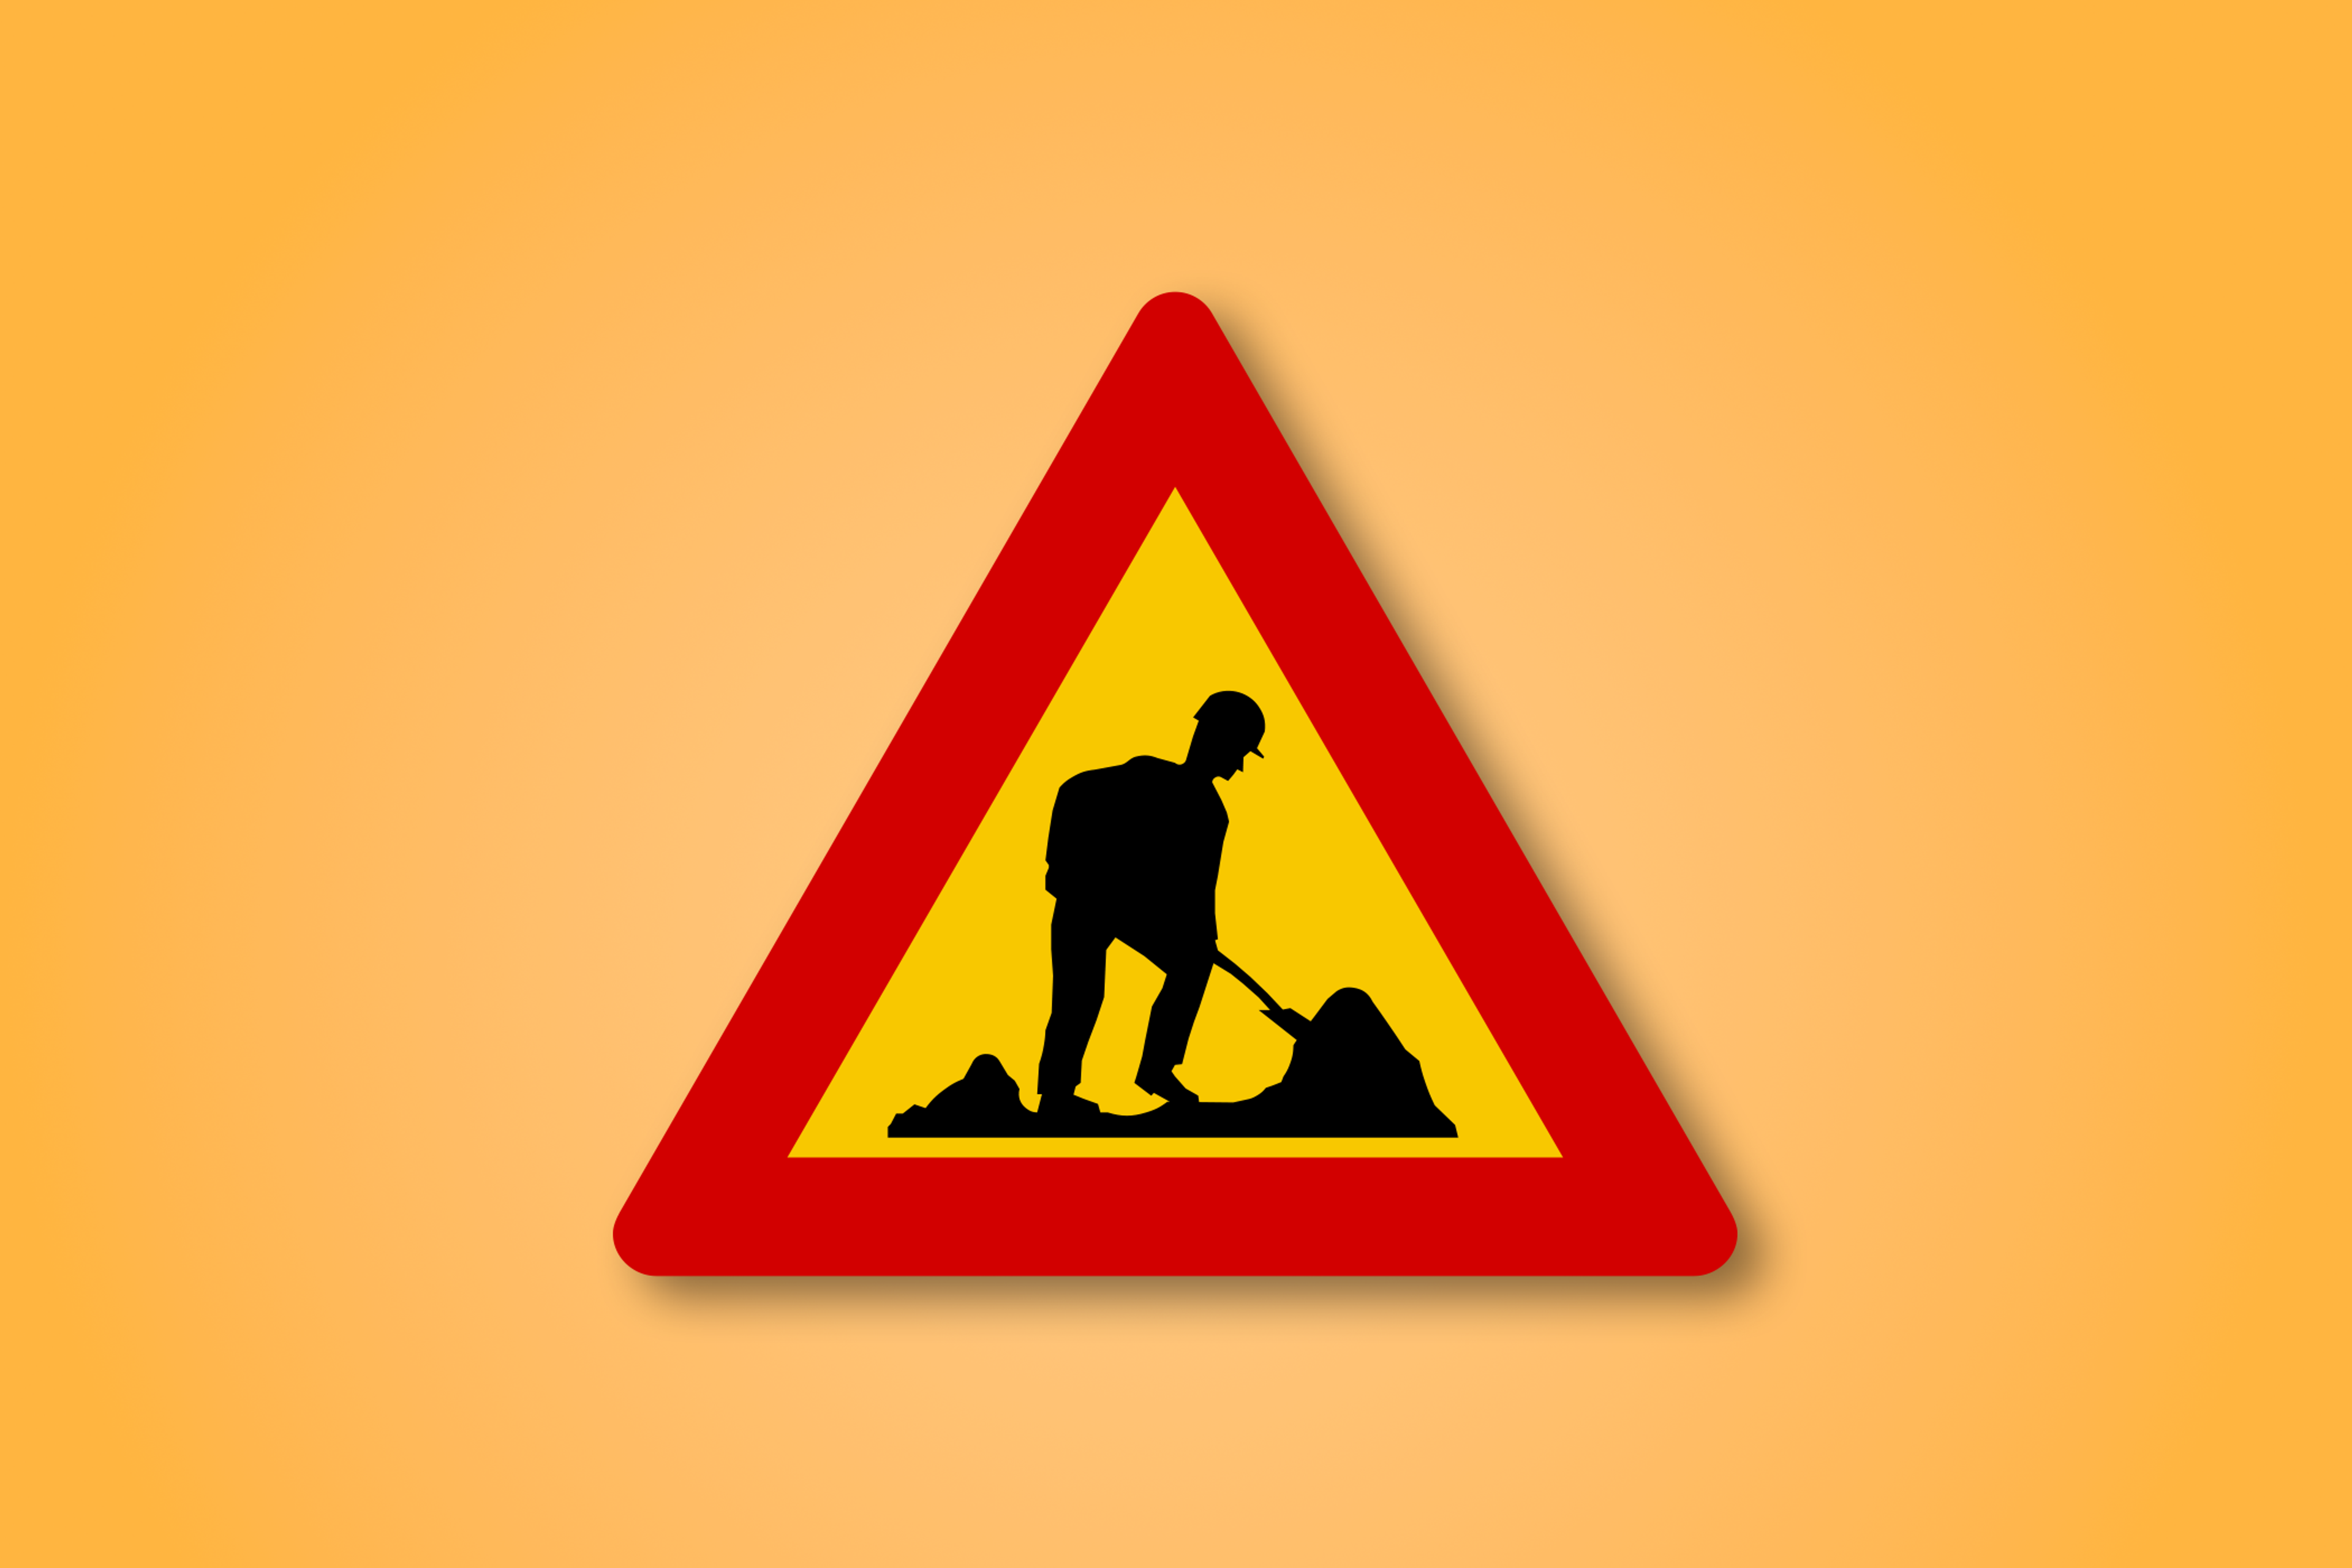 Signe rouge et jaune de route de triangle avec un travailleur islandais au milieu. Ce signe de route signifie travailleurs en avant